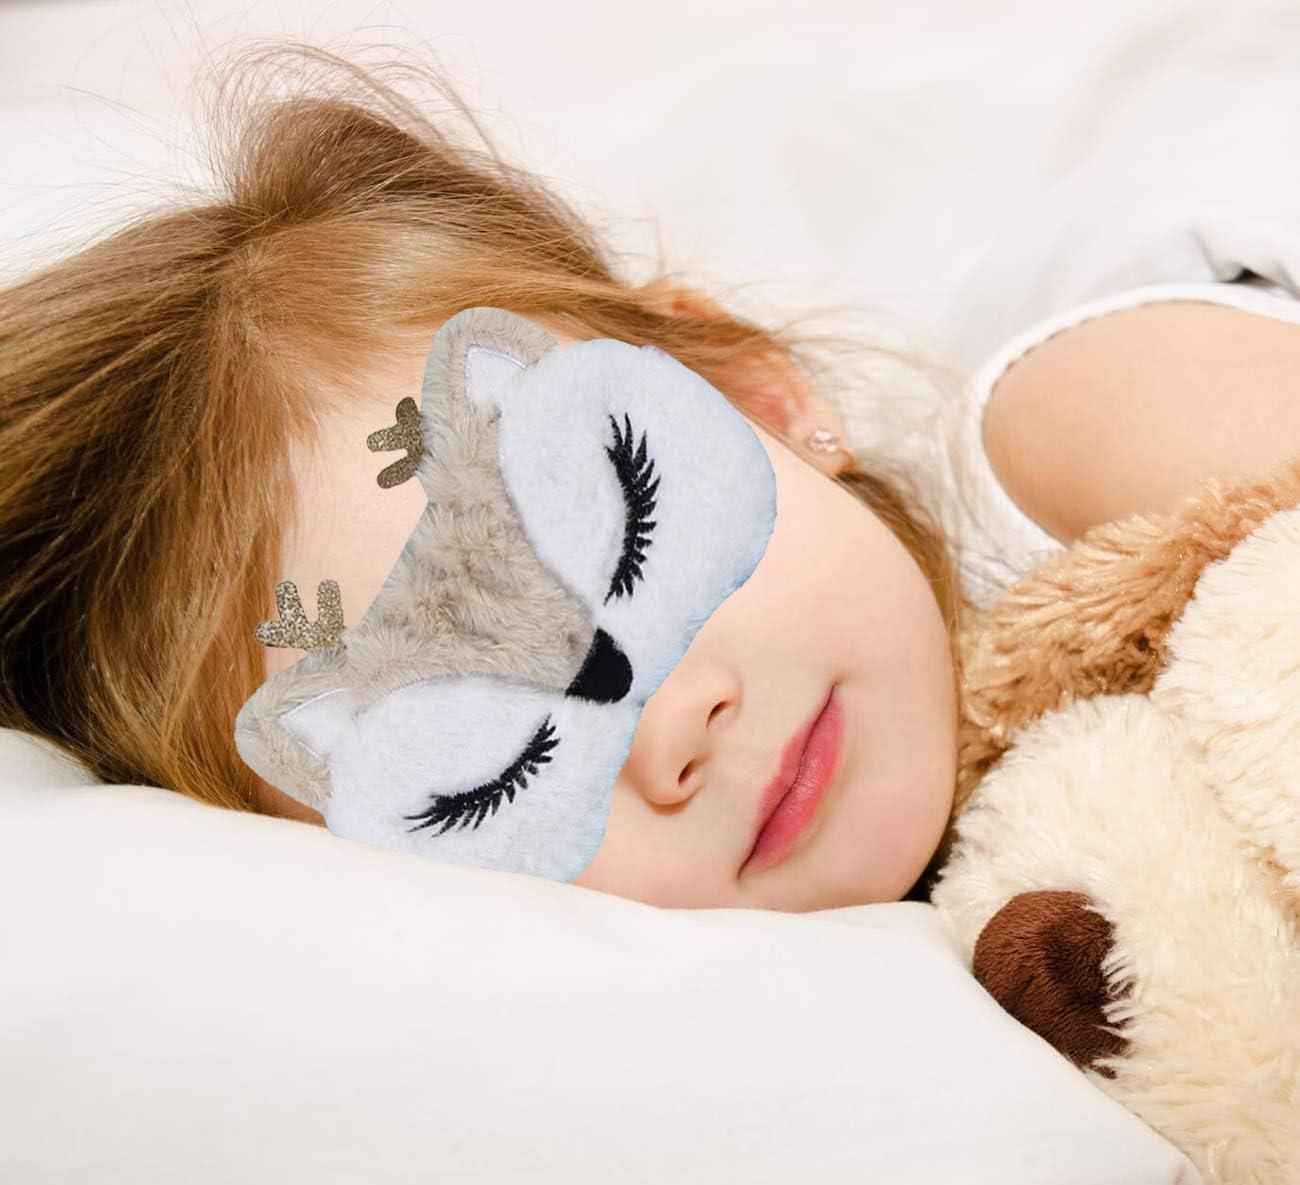 Plush Blindfold Plush Eye Blindfolds For Sleep Nap Eye Cover For